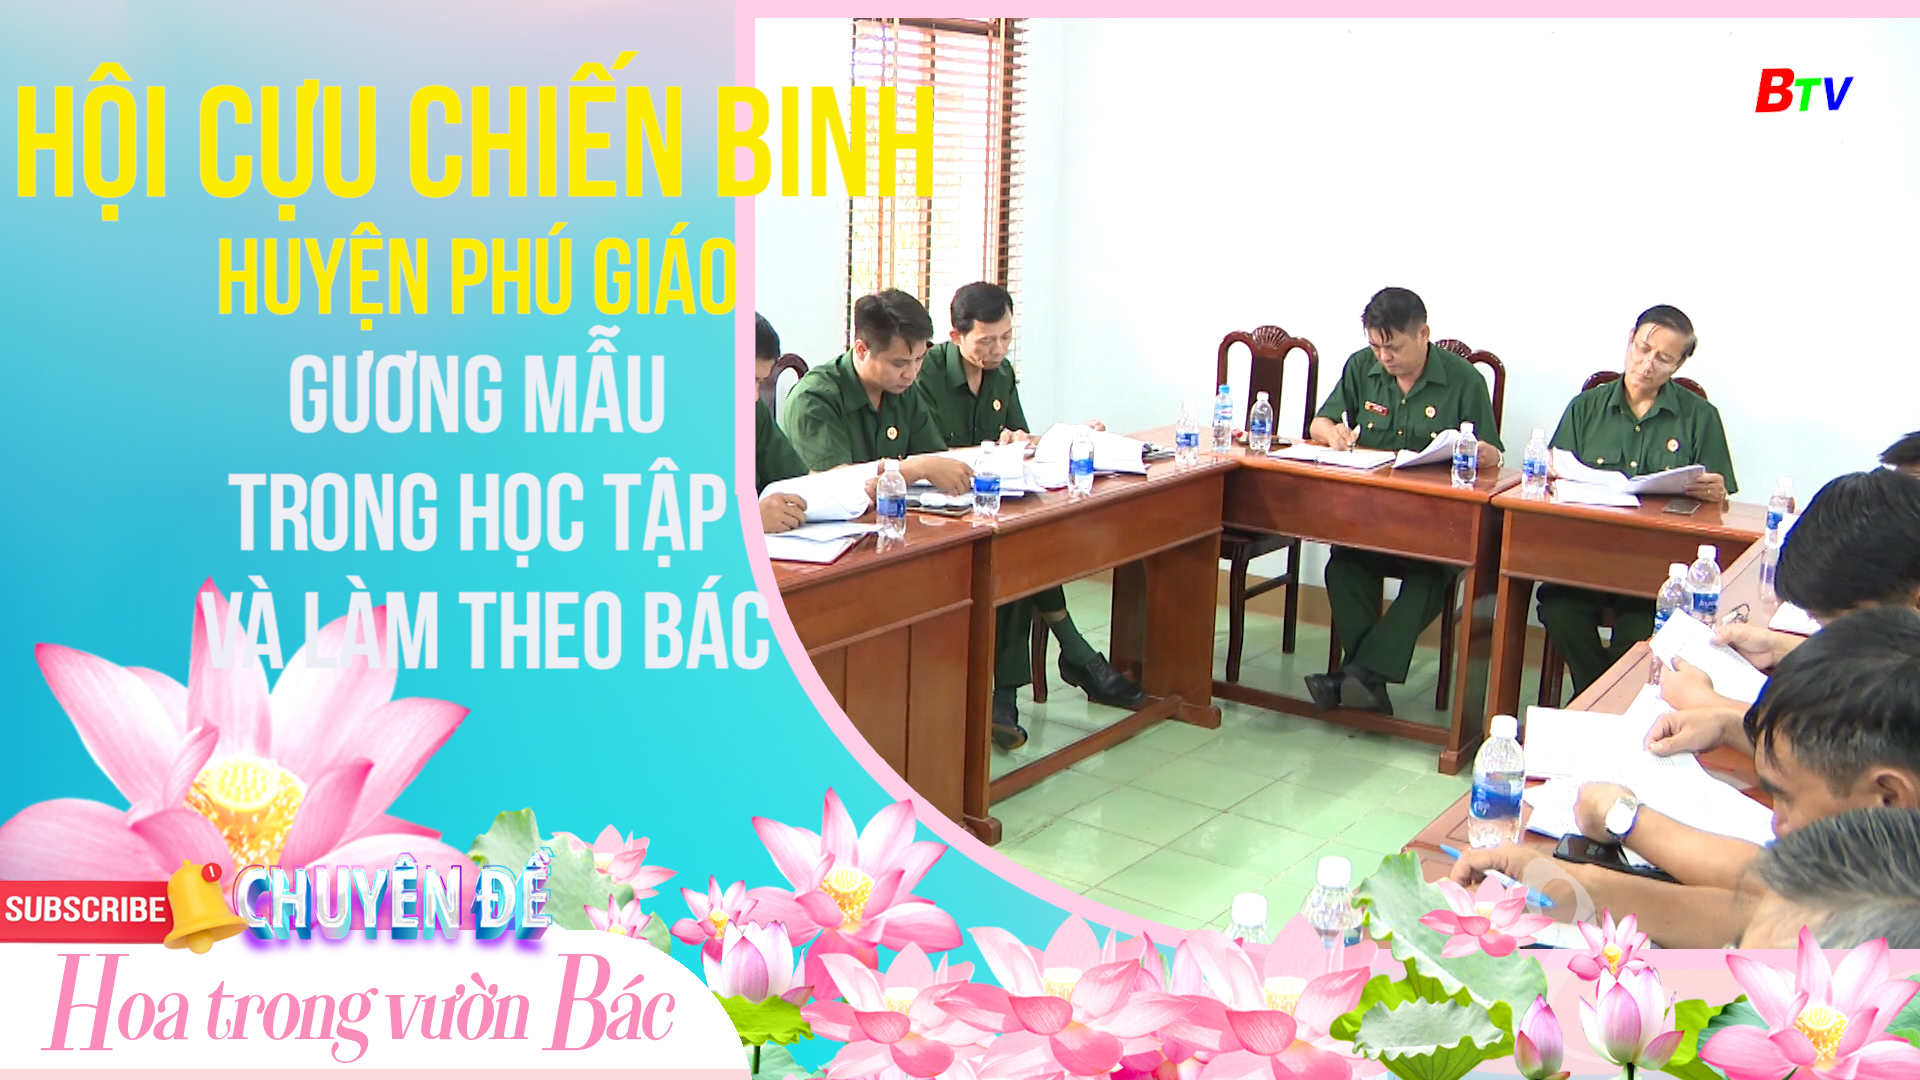 Hội Cựu chiến binh huyện Phú Giáo gương mẫu trong học tập và làm theo Bác